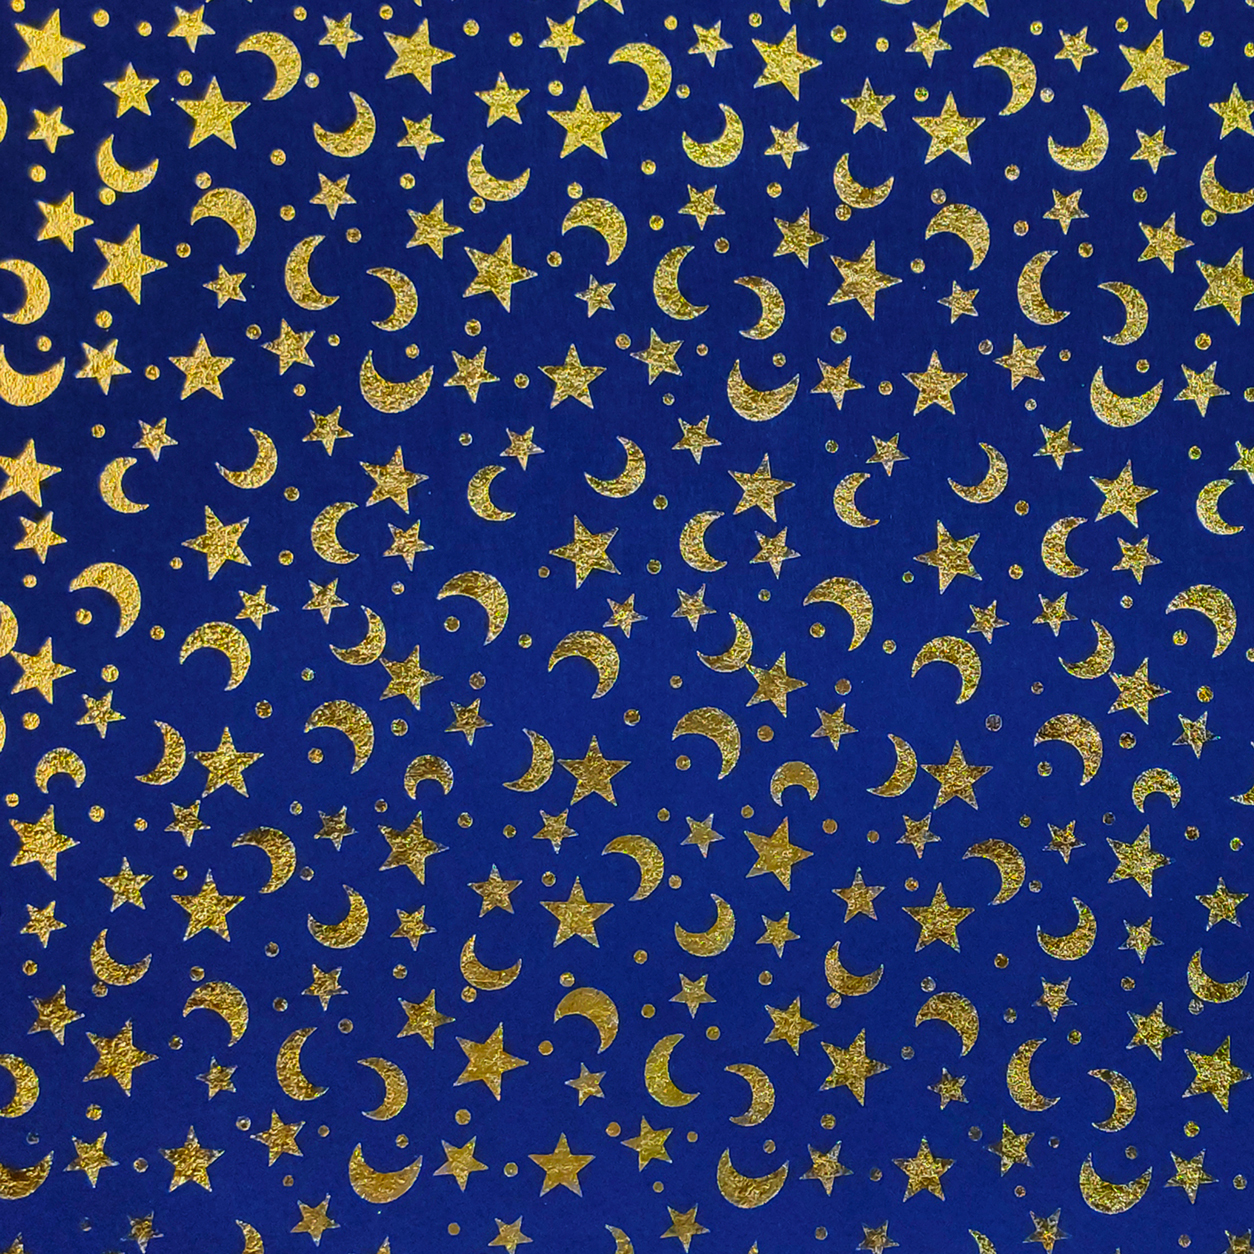 pannolenci-lune-e-stelle-oro-sfondo-blu